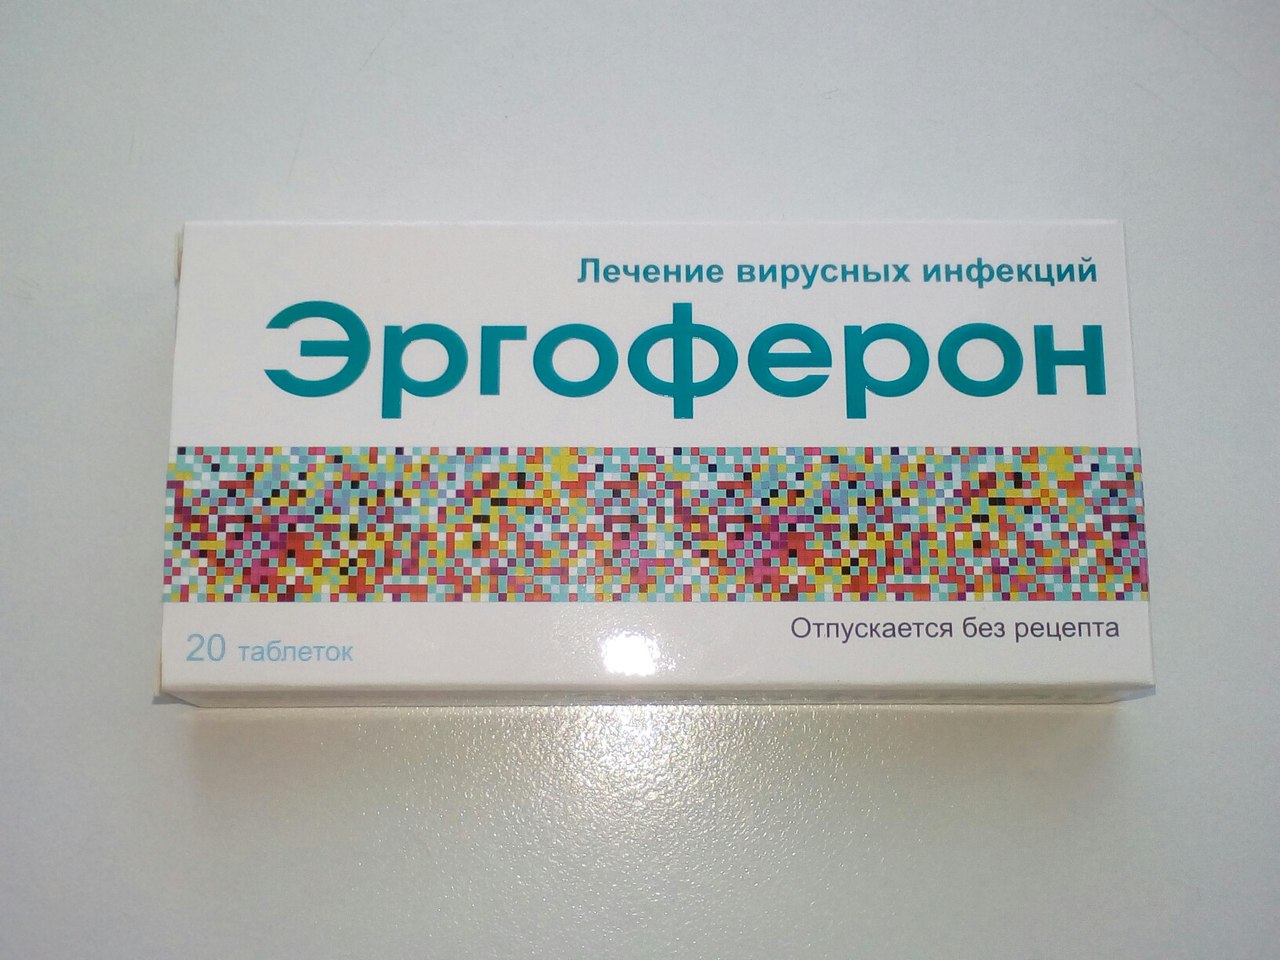 Эргоферон – современный противовирусный препарат